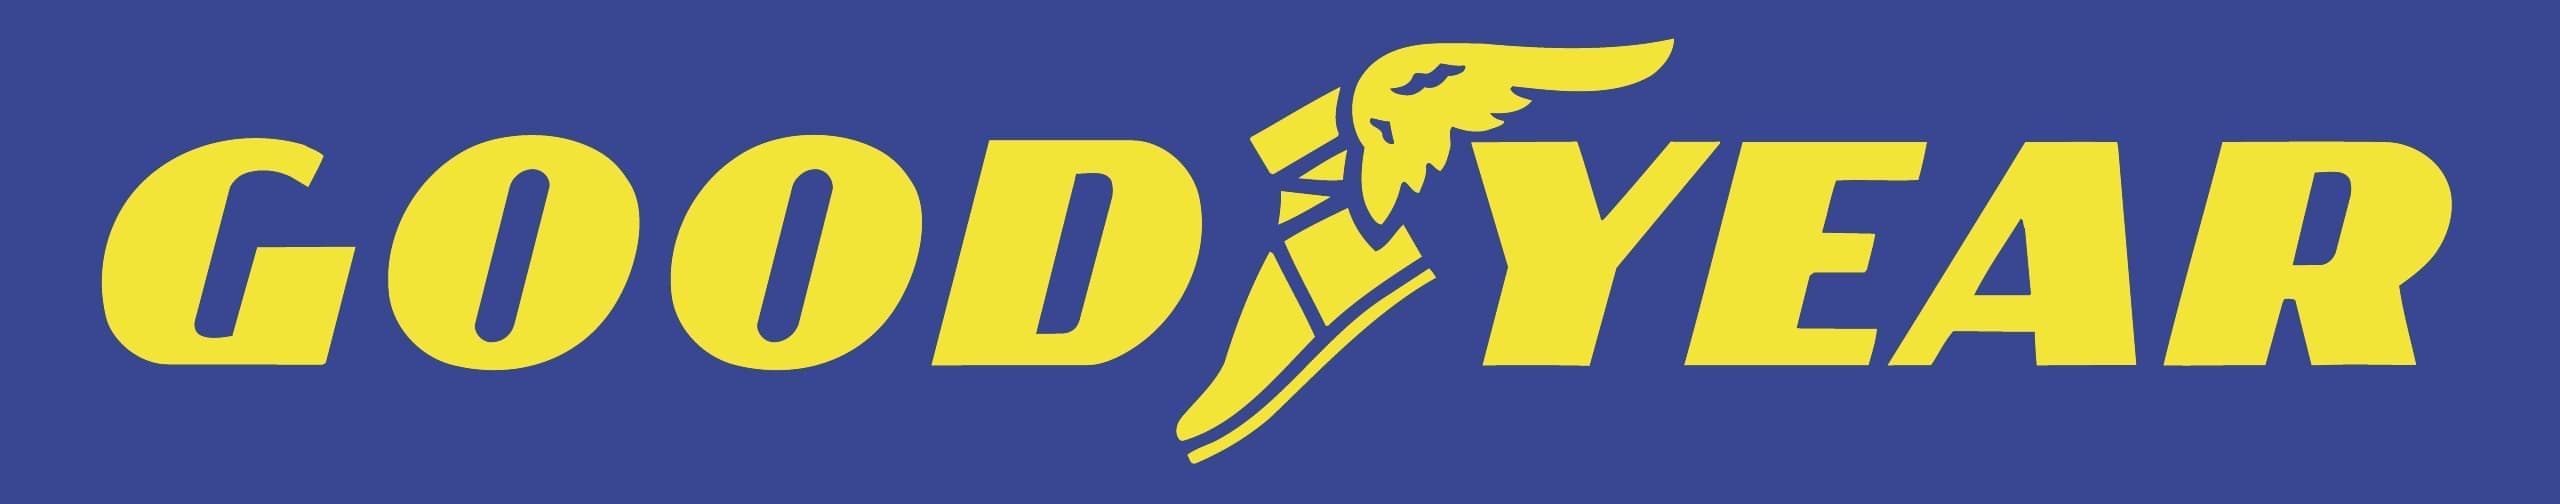 Goodyear teher gumiabroncs logo